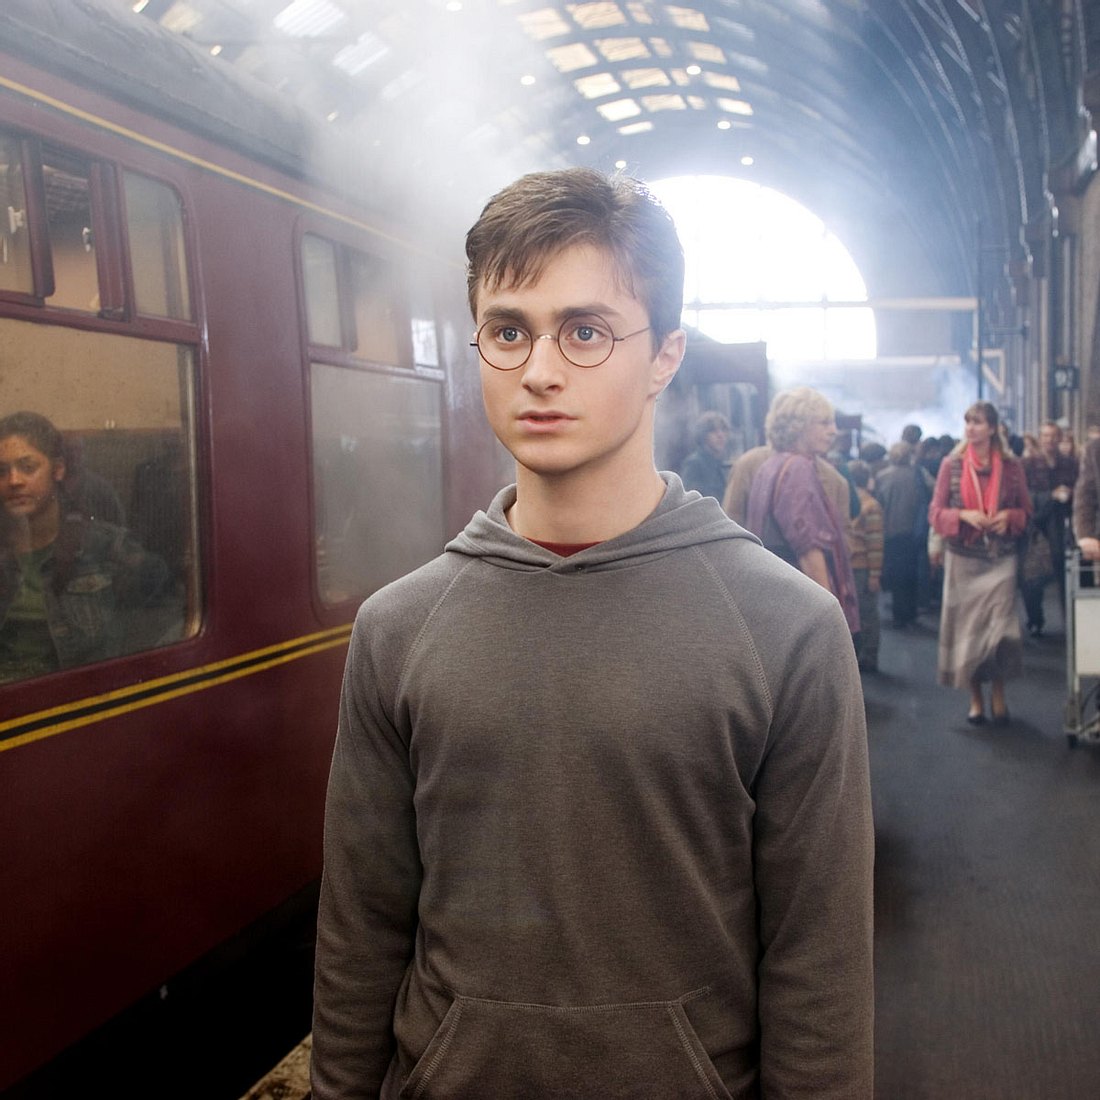 Die 10 teuersten Filme: Harry Potter und der Halbblutprinz